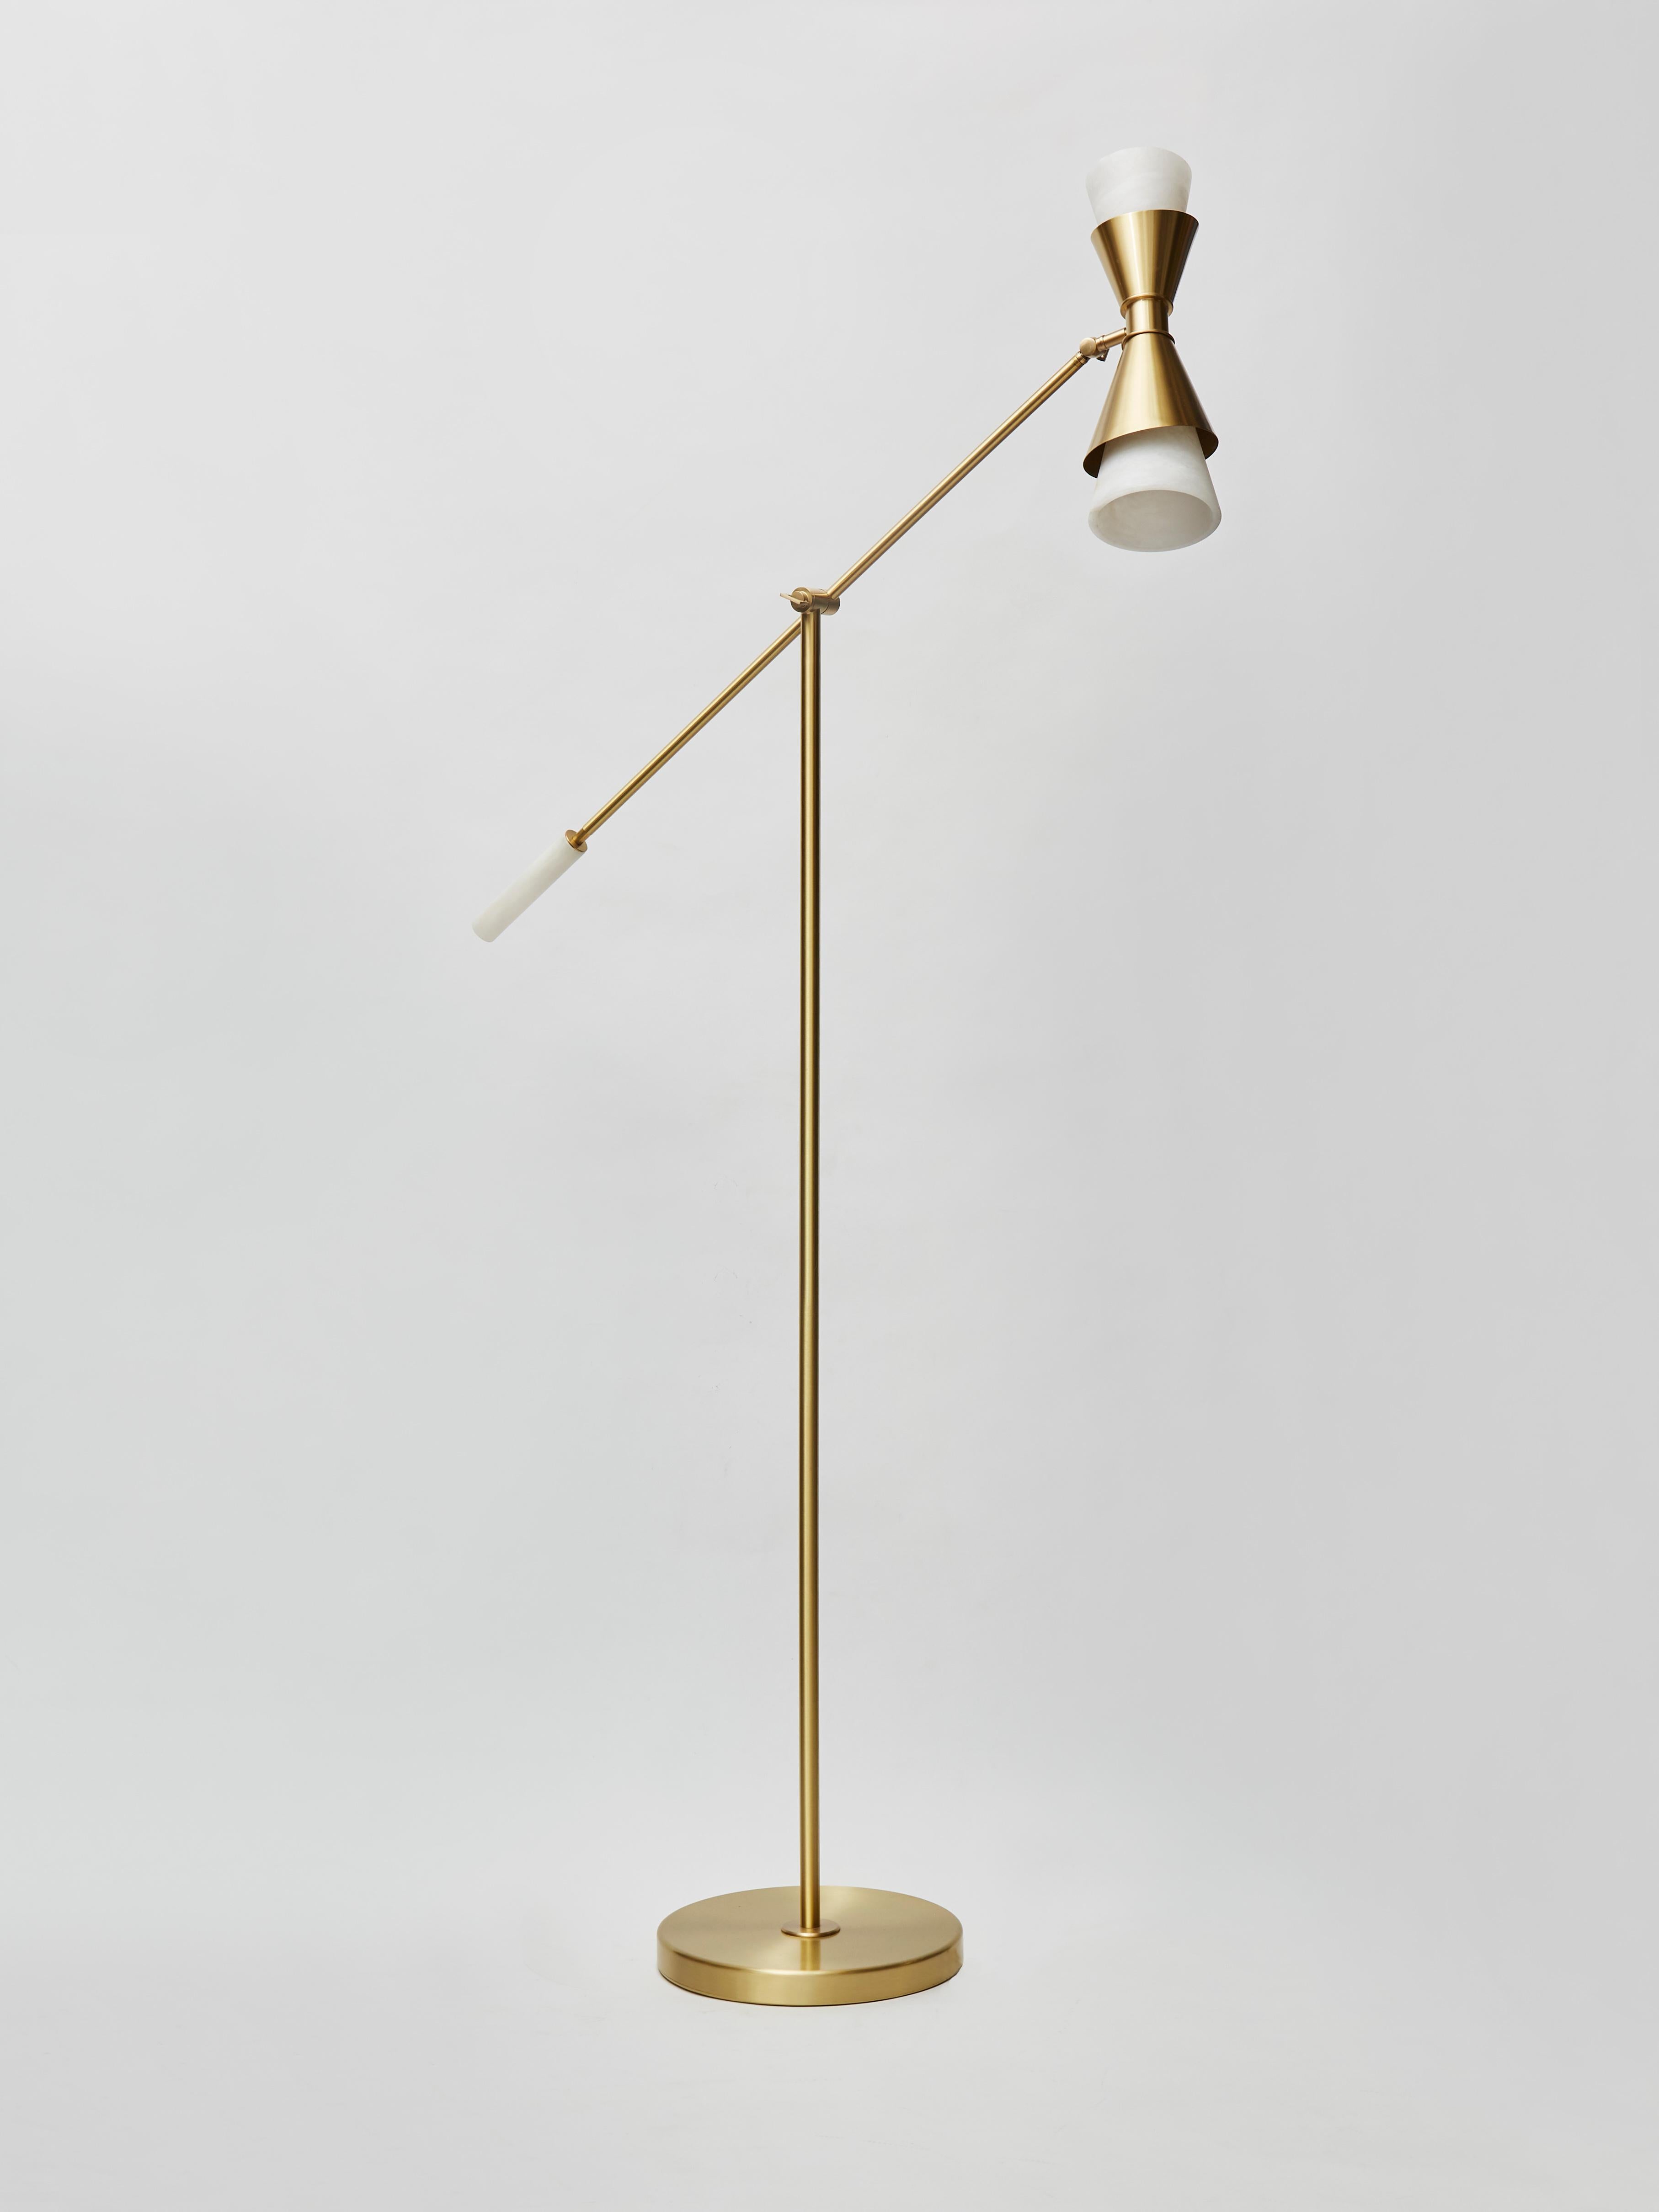 Lampadaire d'inspiration midcentury par Glustin Luminaires, bras de lumière ajustable avec deux cônes, poignée à l'extrémité opposée, le tout en albâtre.